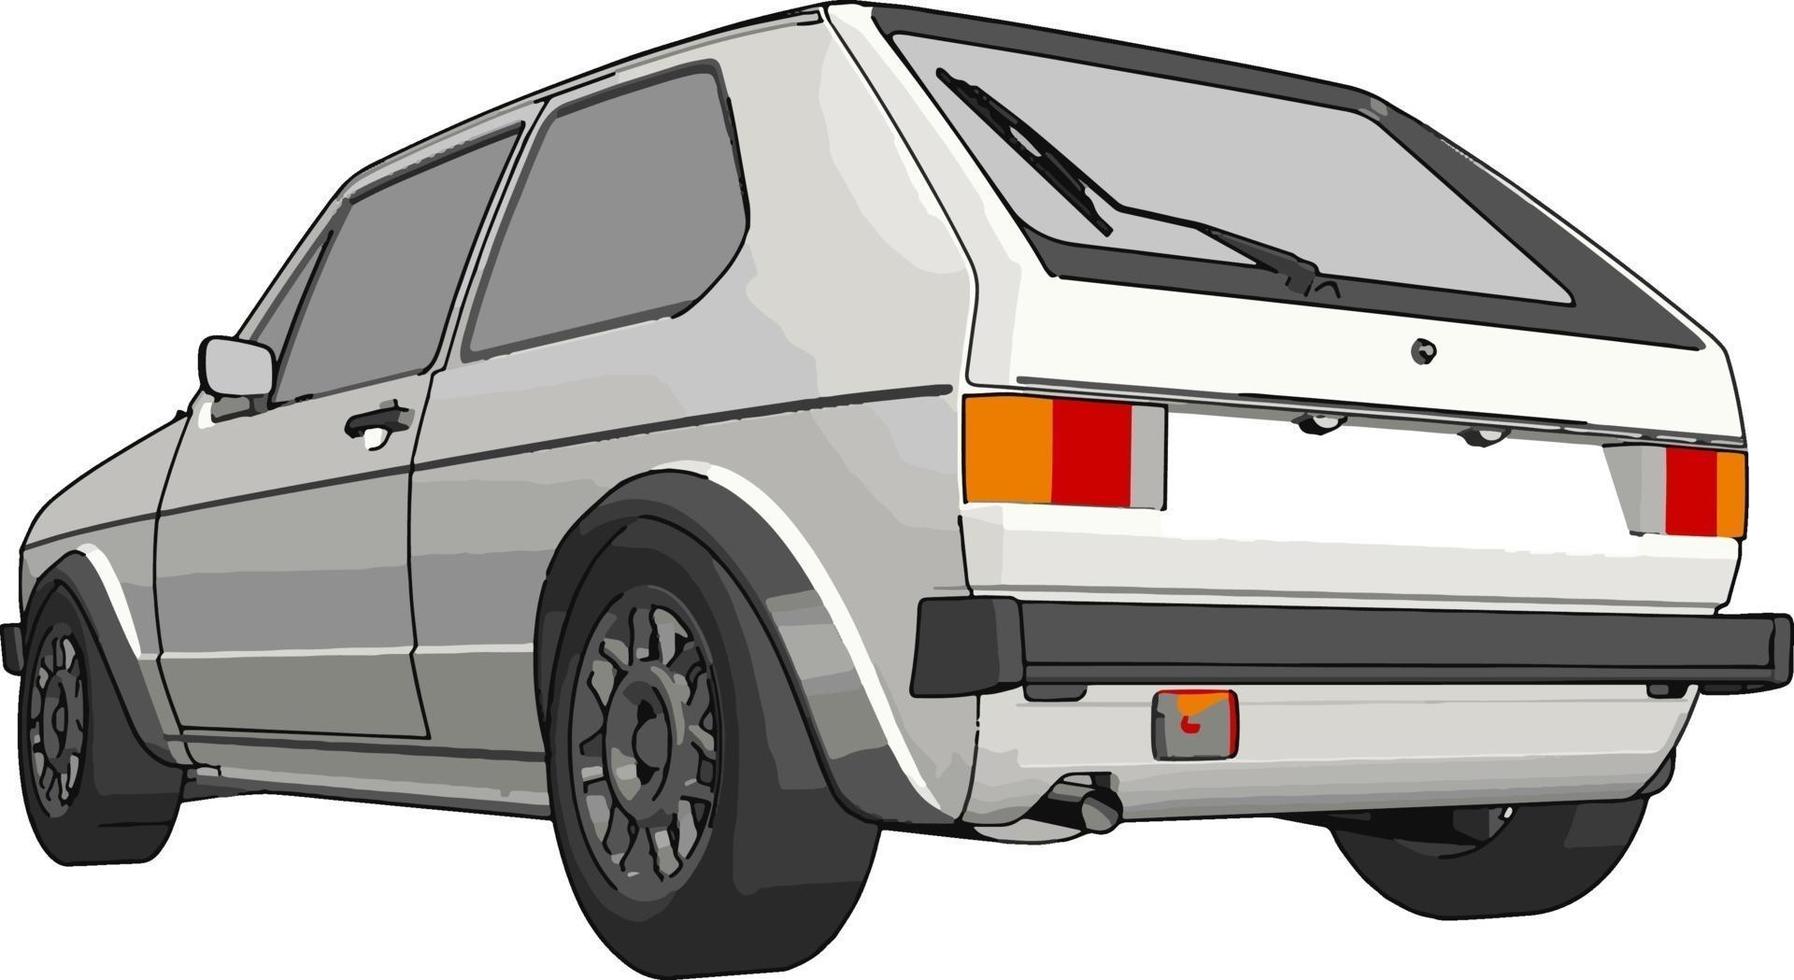 White car, illustration, vector on white background.